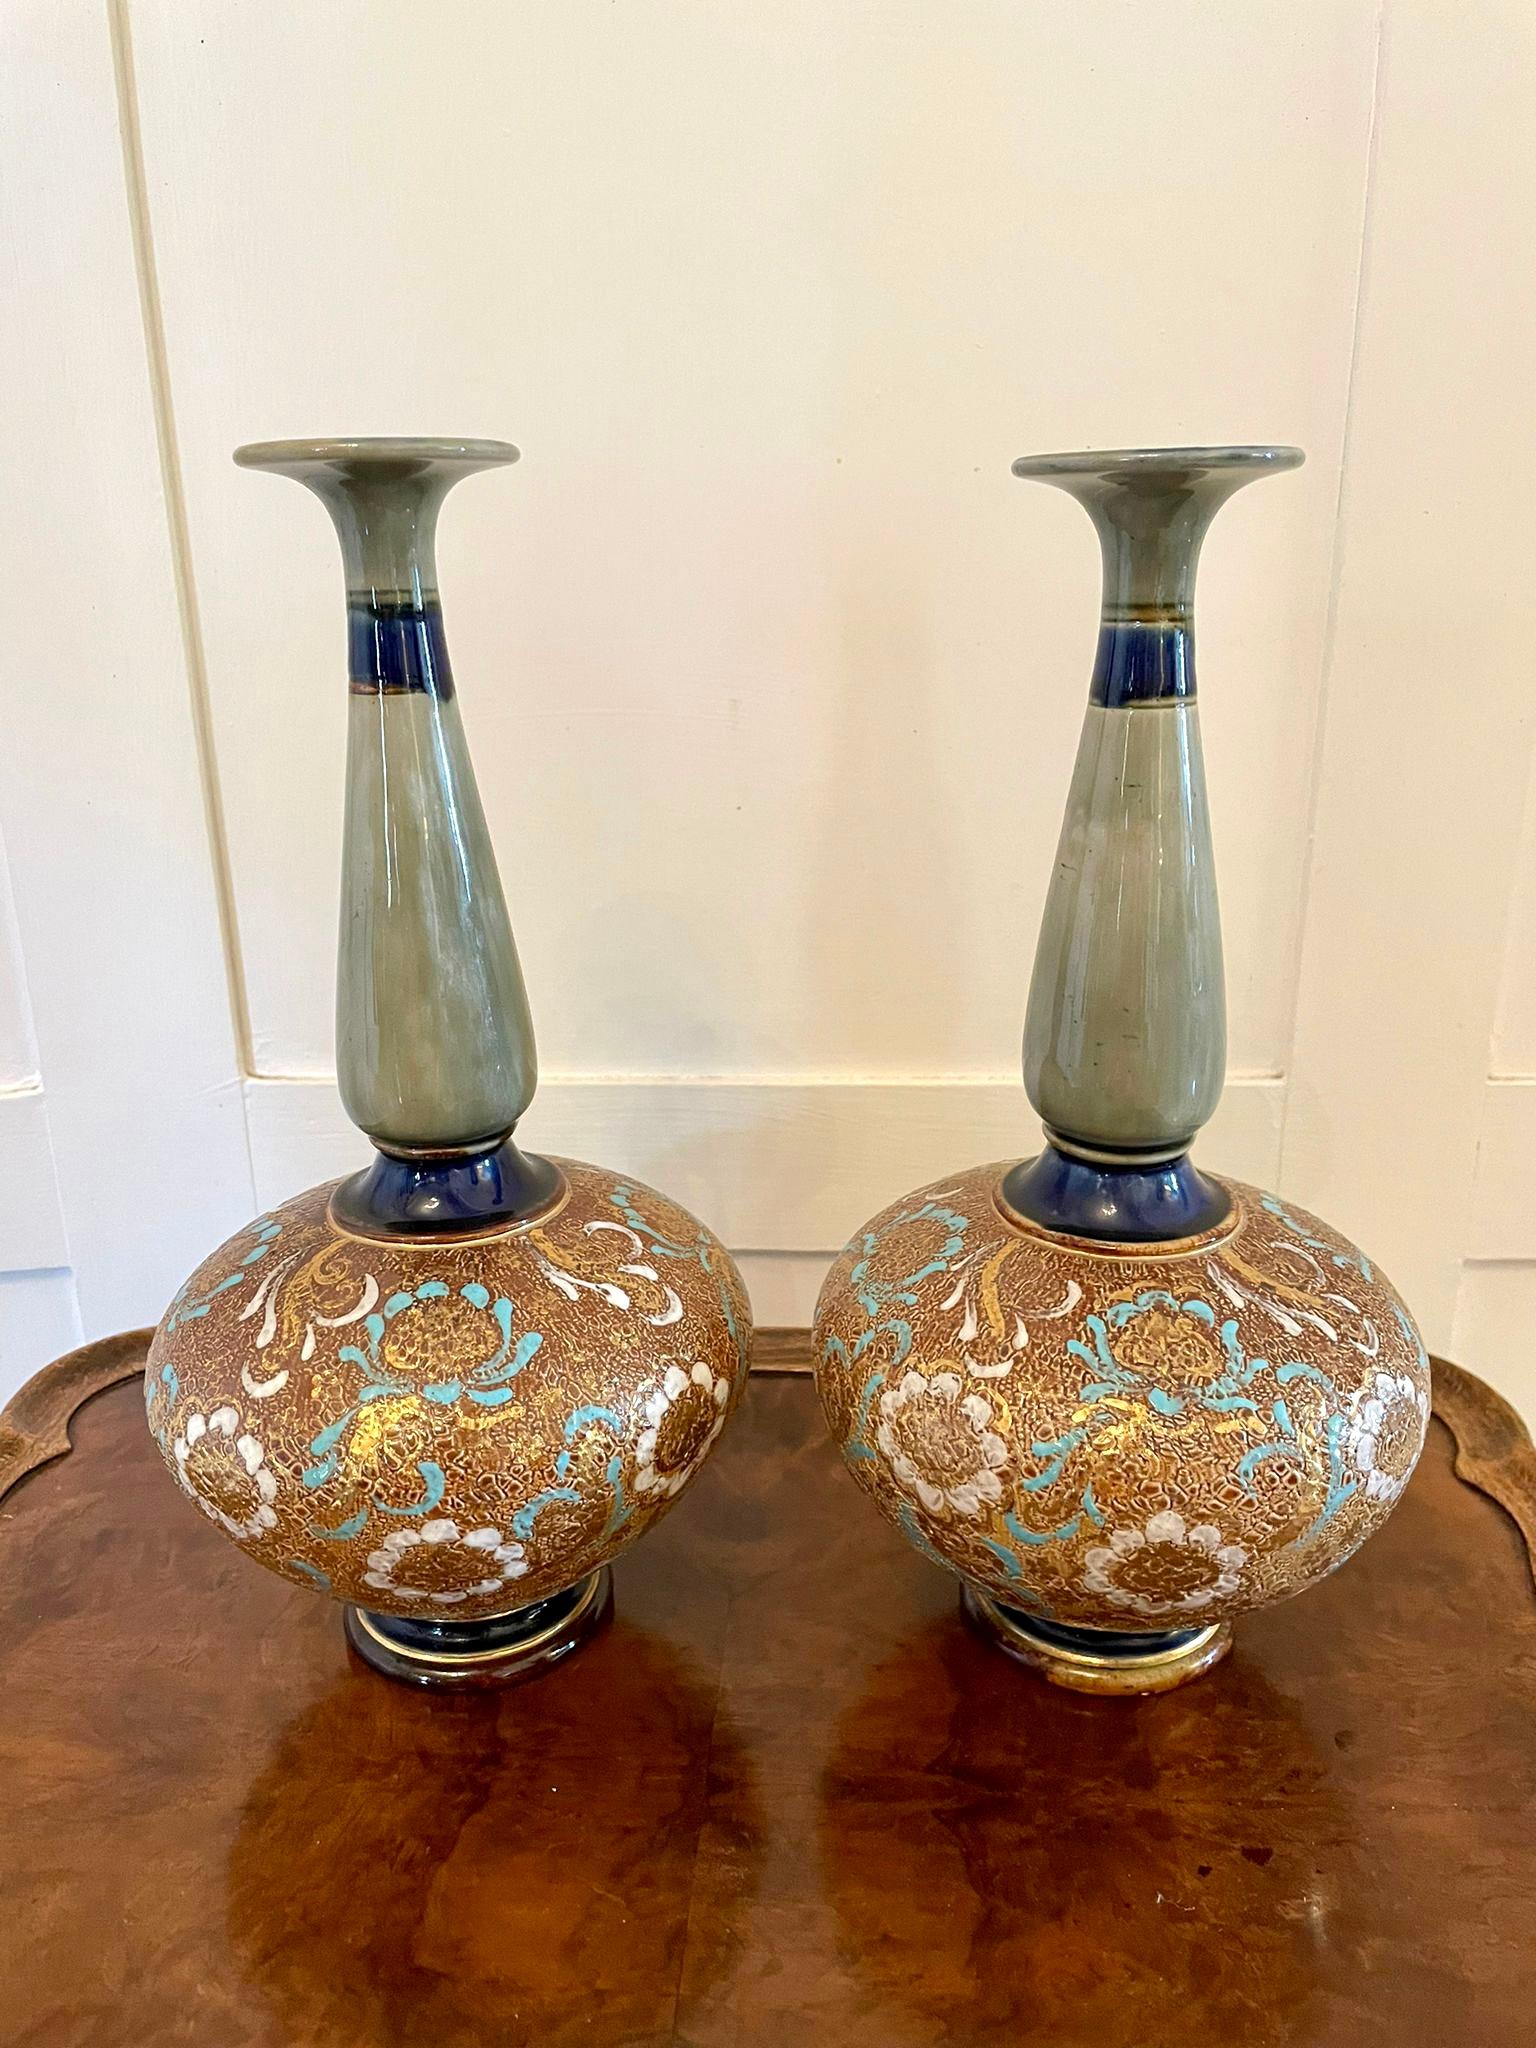 Paar antike Vasen von Royal Doulton mit schlankem Hals und rundem Fuß. Die Körper sind mit Blütenblättern aus weißem Gold und blauem Email über dem strukturierten Grund versehen, die Hälse und Füße in Oliv, Grün, Gold, Braun und Blau. Sie sind mit